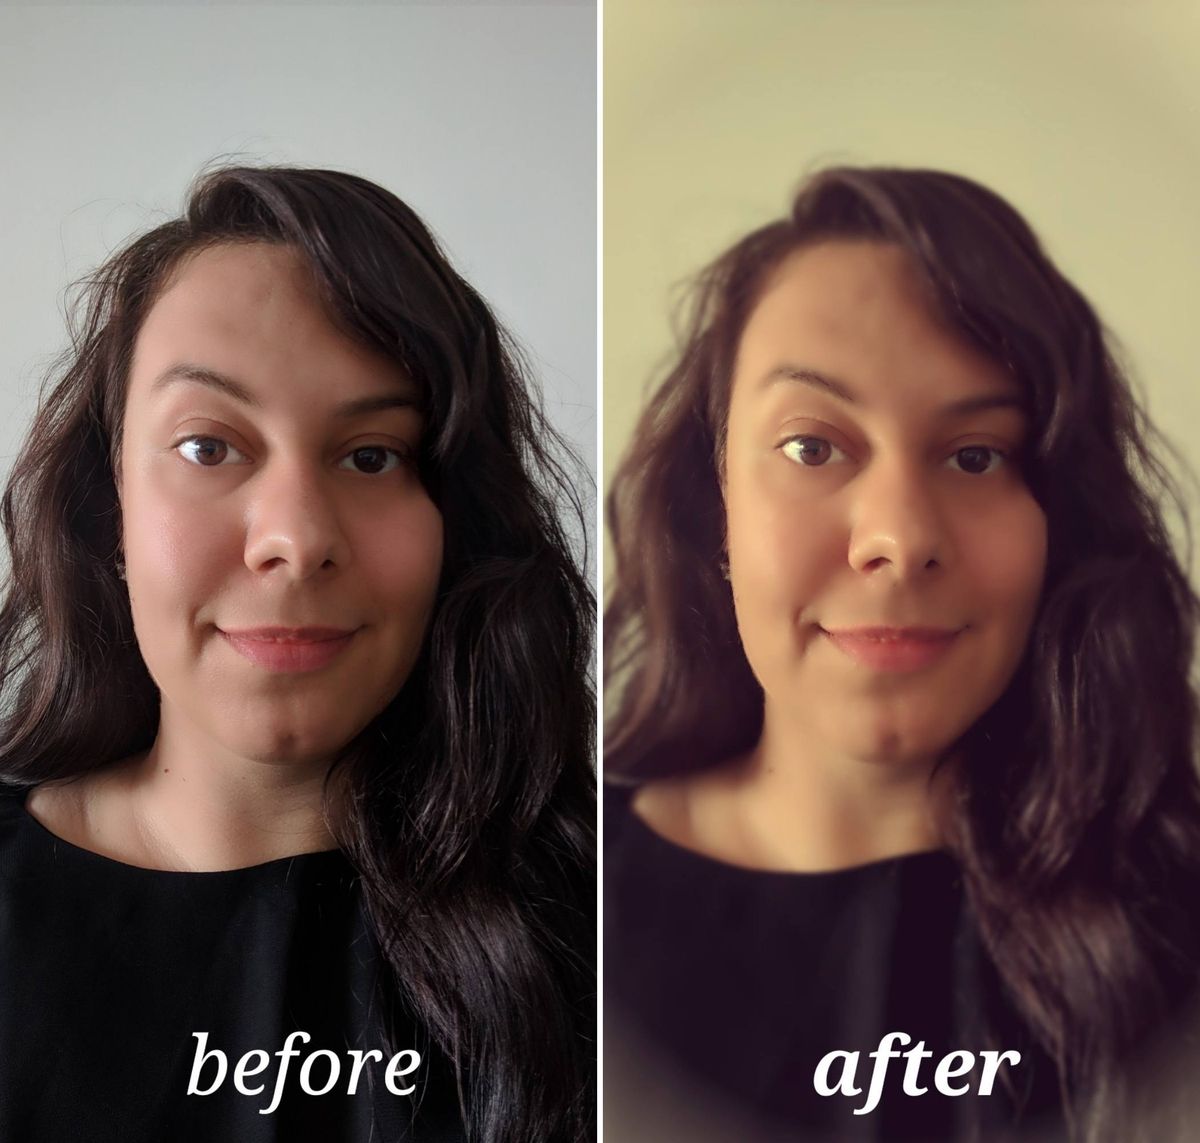 Pixlr vor und nach der Bearbeitung